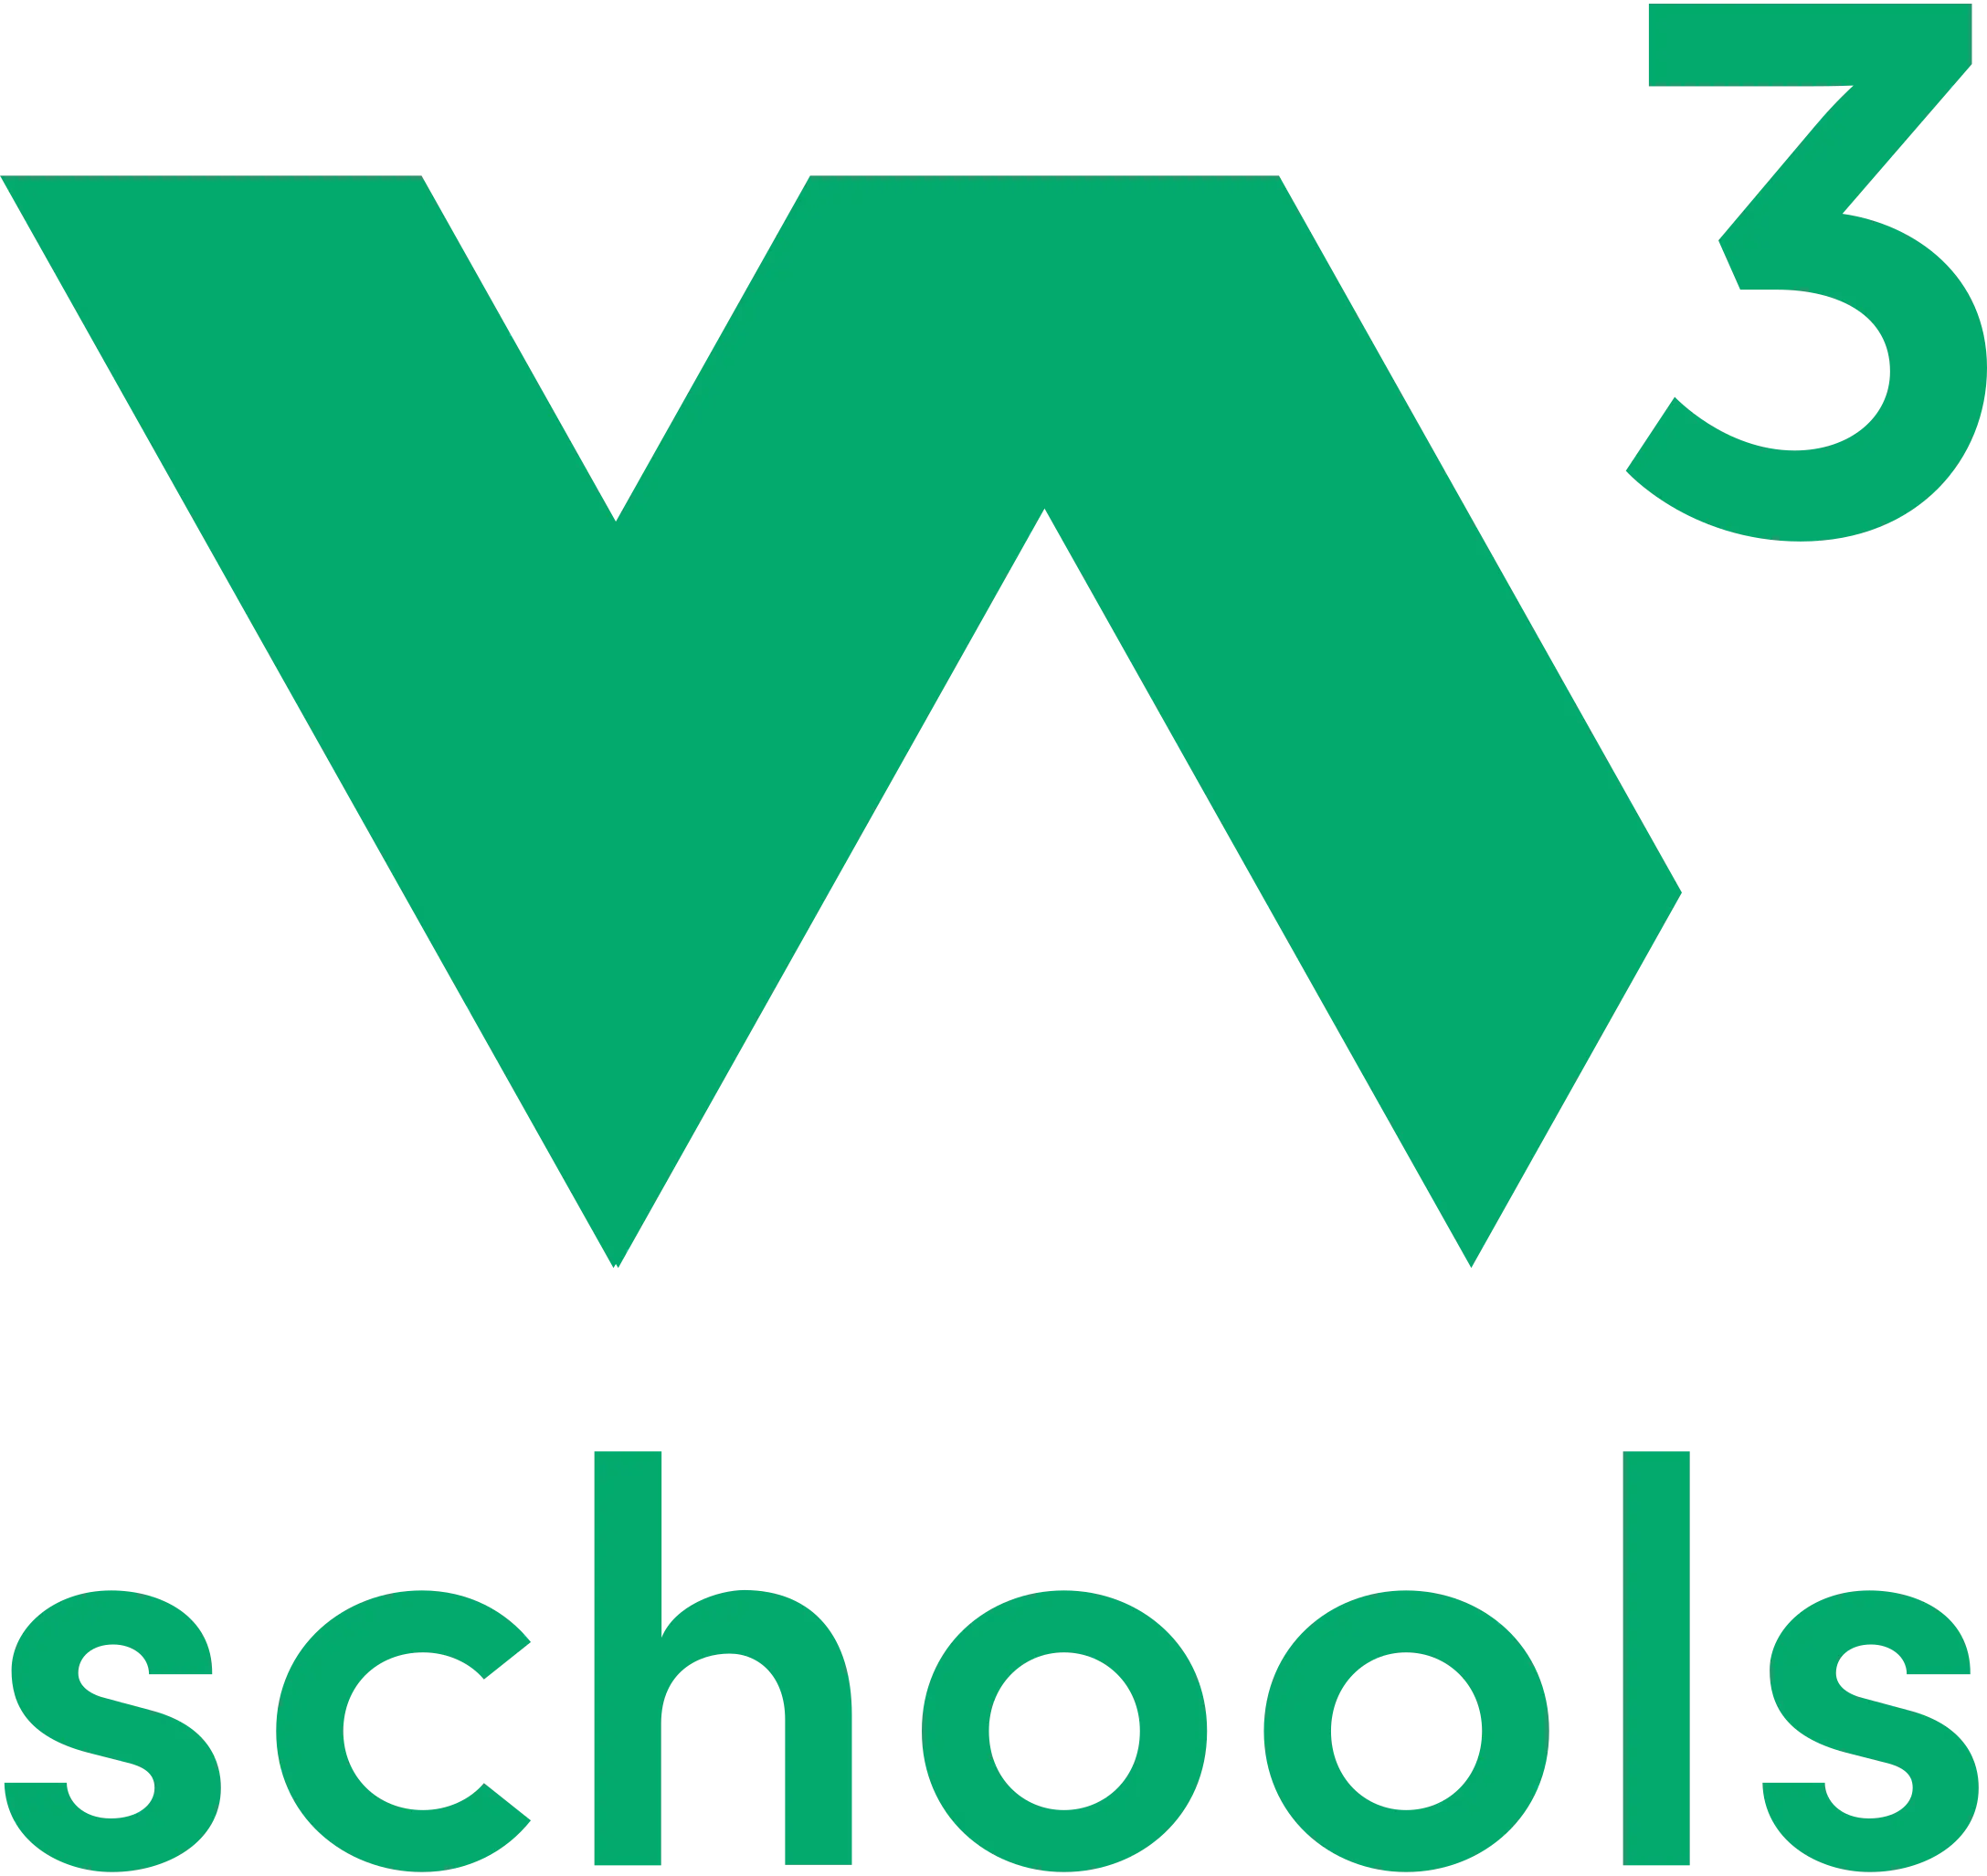 w3 logo